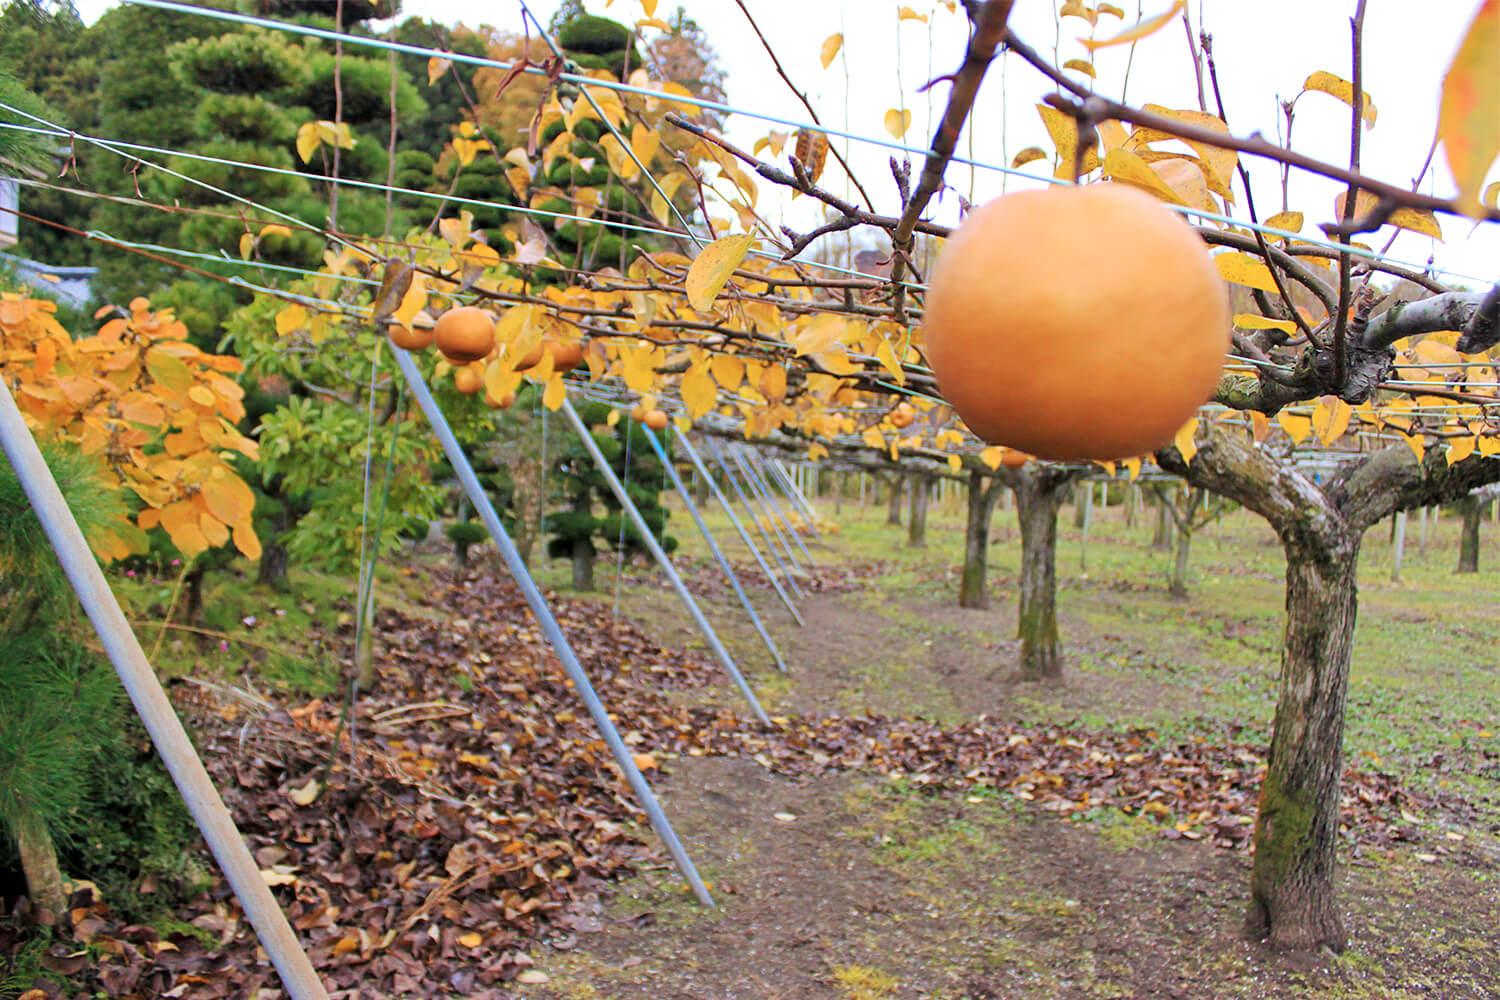 室野井果実園で梨・りんご・桃狩り体験